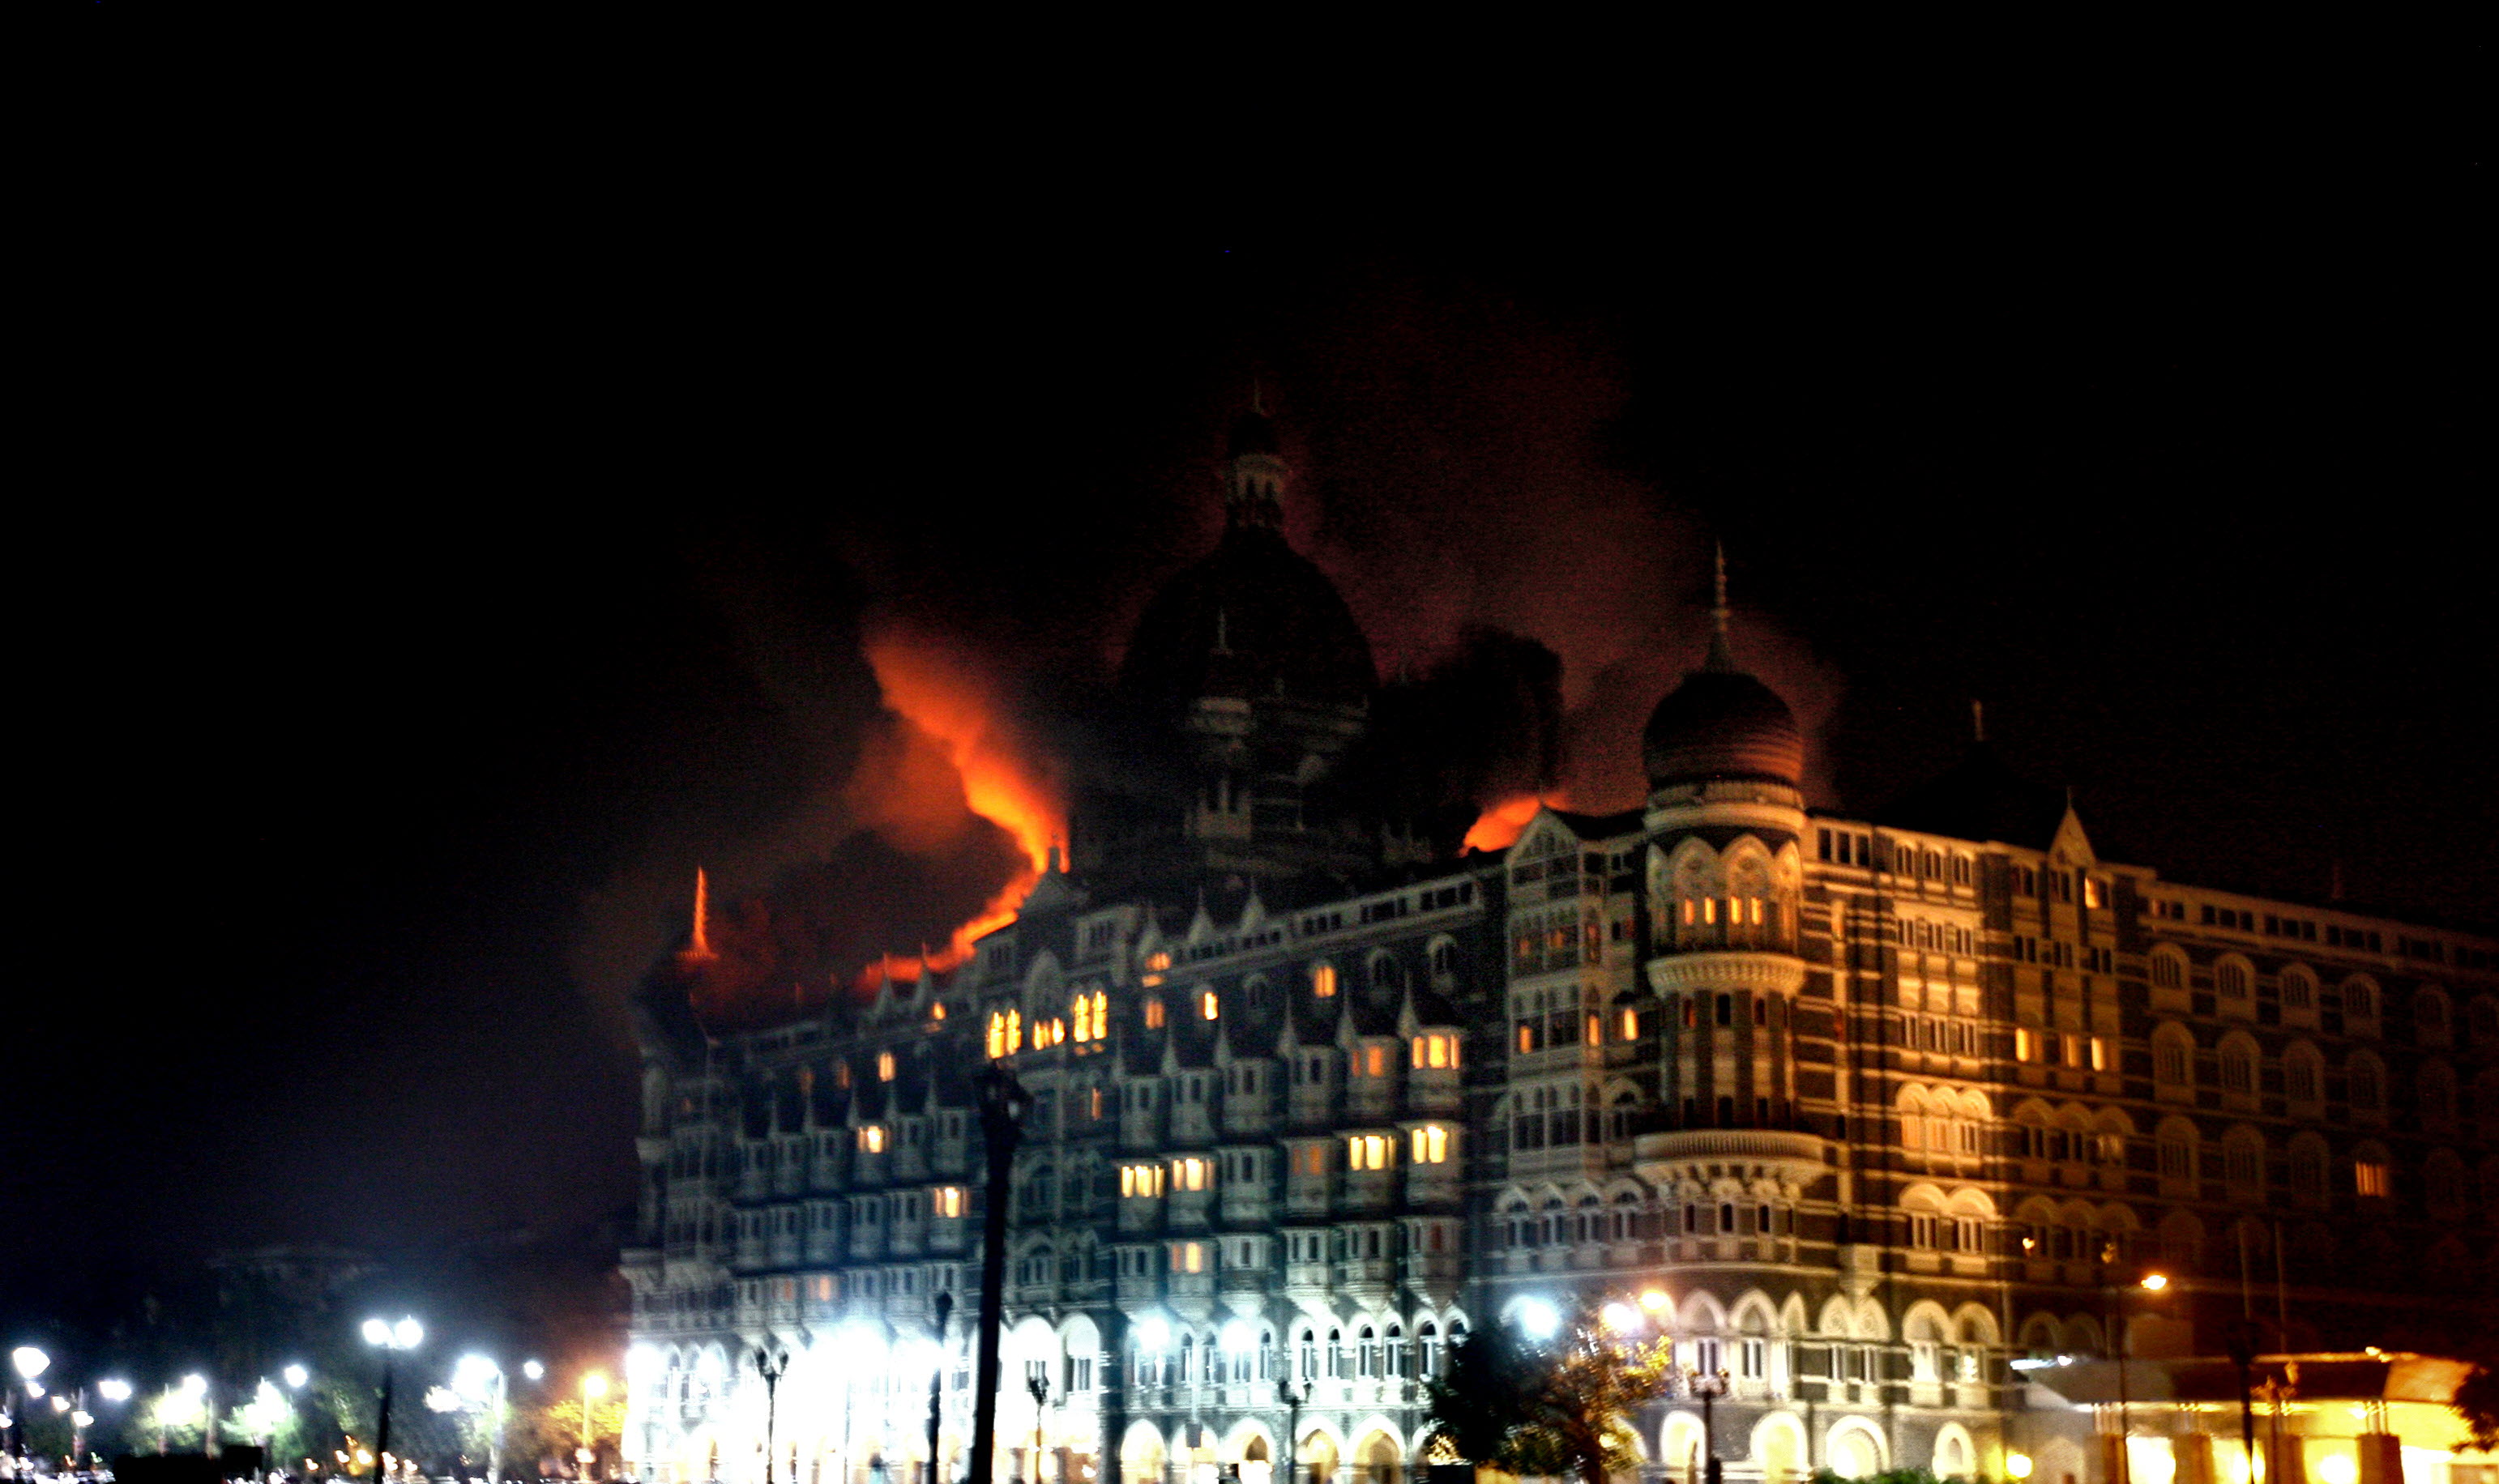 Отель тадж махал 2008. Индия 2008 теракт отель Мумбаи. Отель Тадж Махал в Мумбаи теракт 2008. Теракт в Индии 2008 отель Тадж Махал. 26 Ноября 2008 отель Мумбаи.